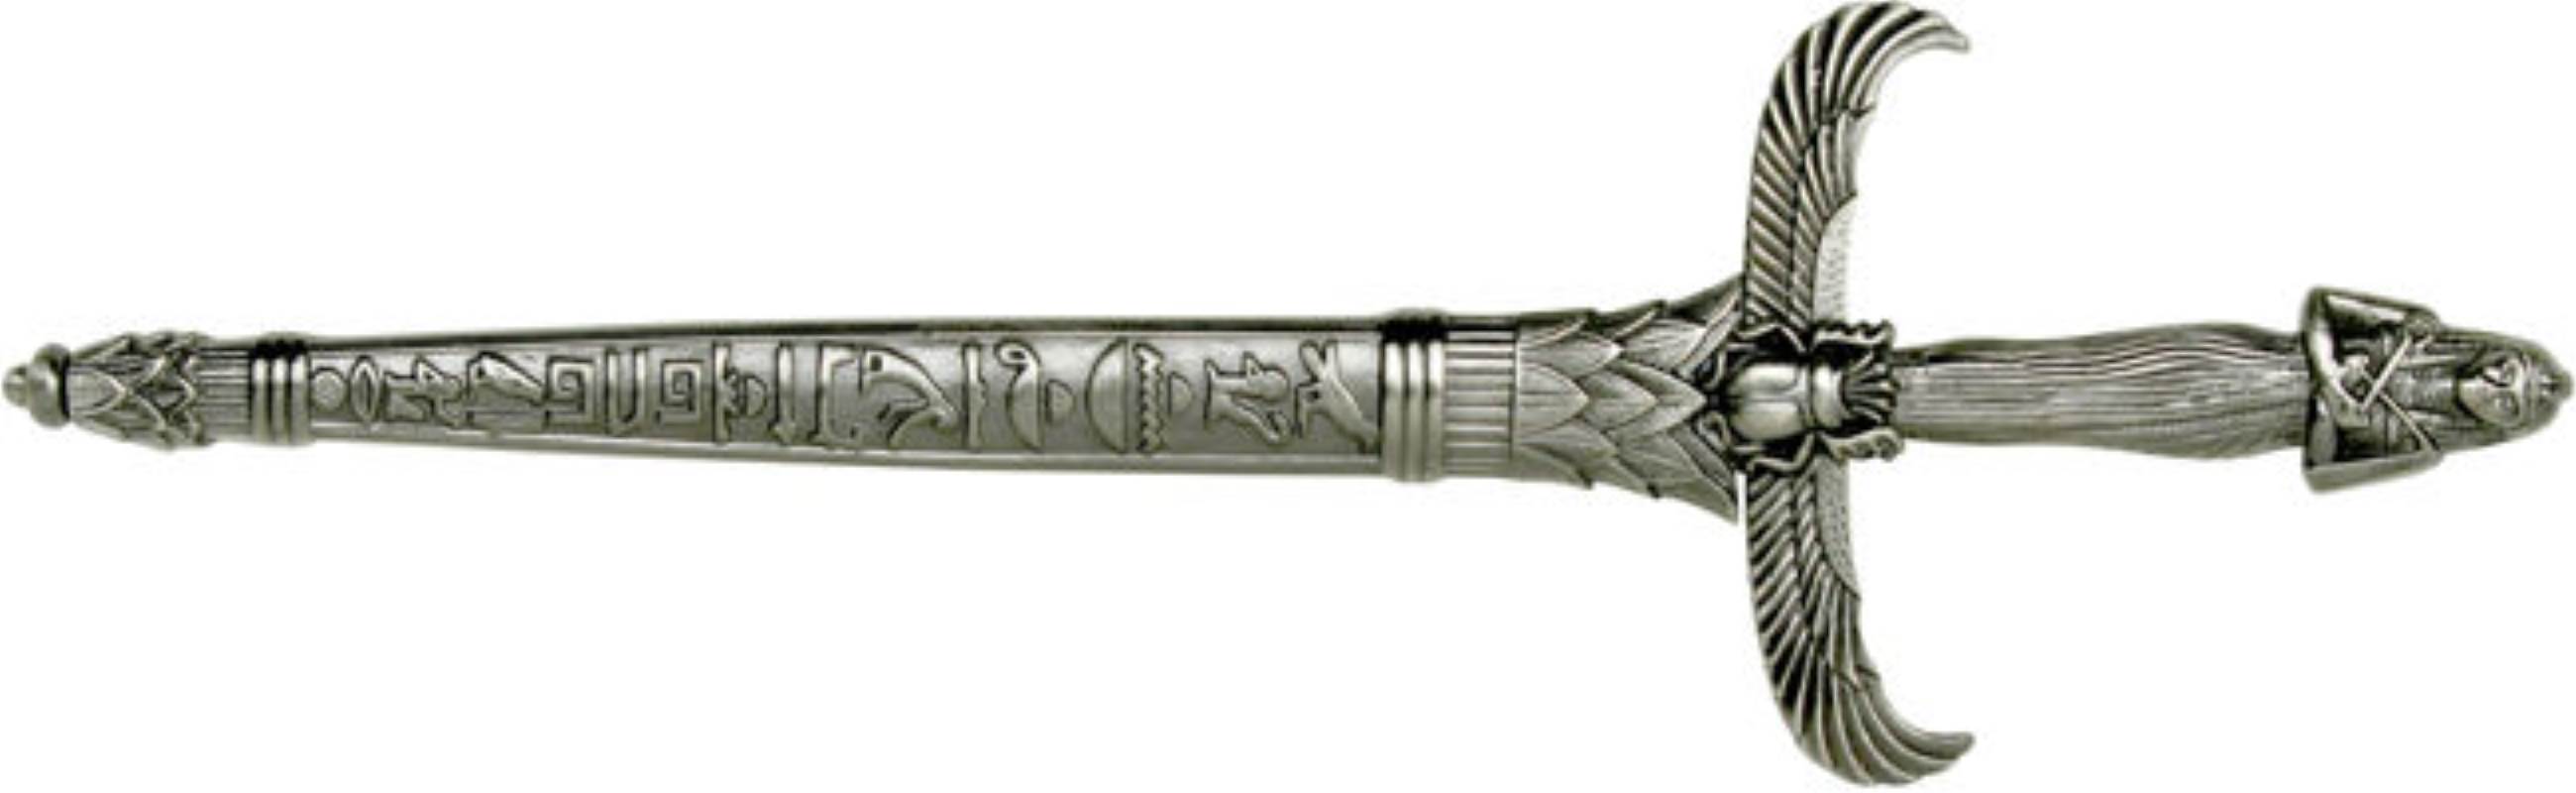 Female Egyptian Dagger